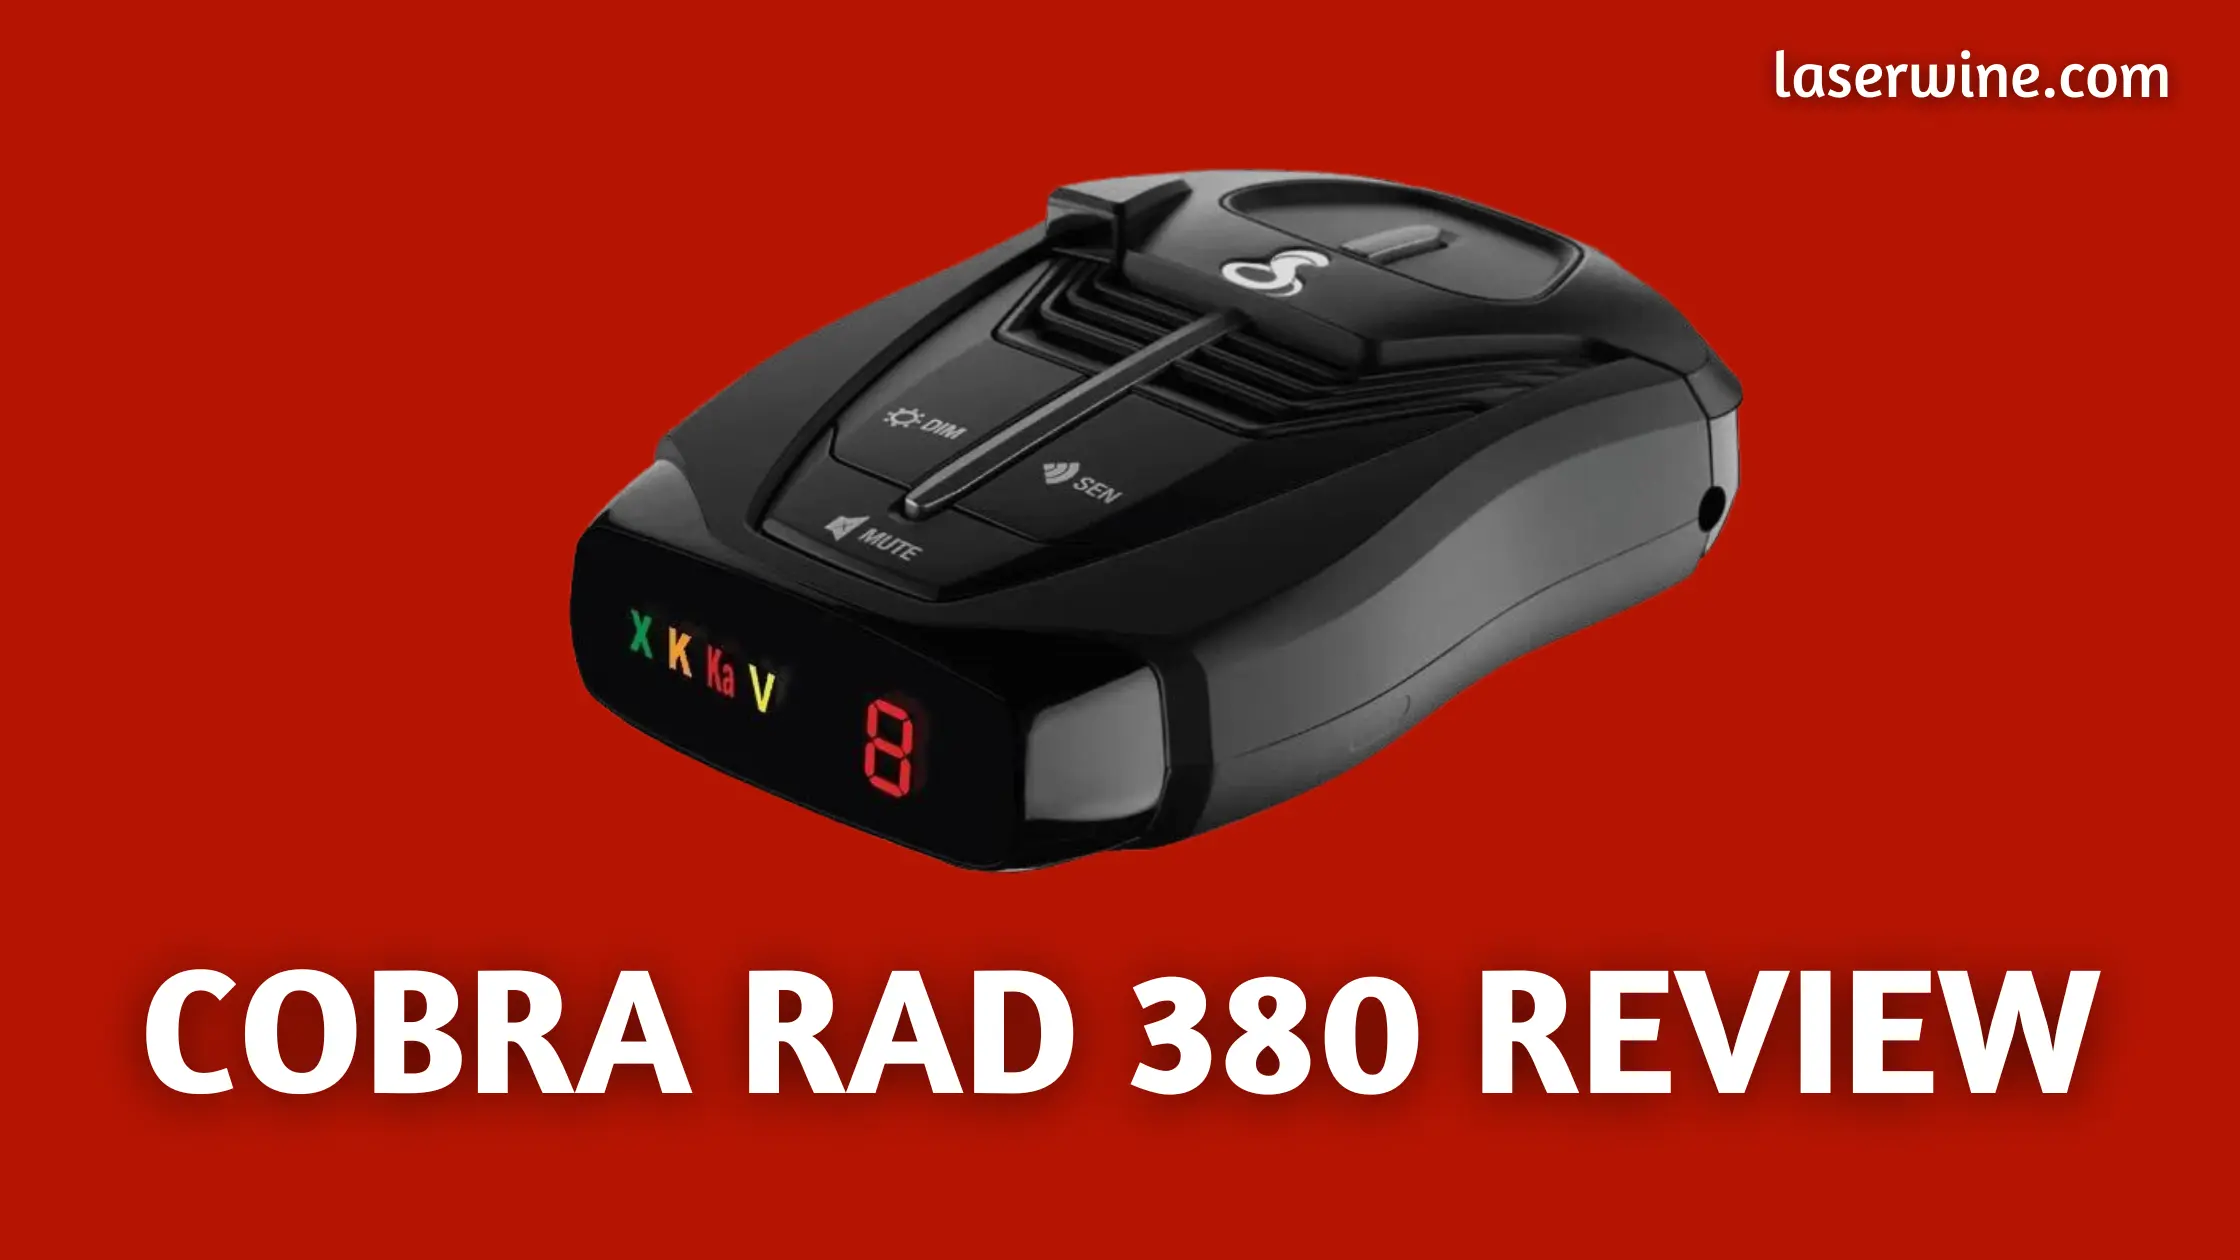 Cobra rad 380 review